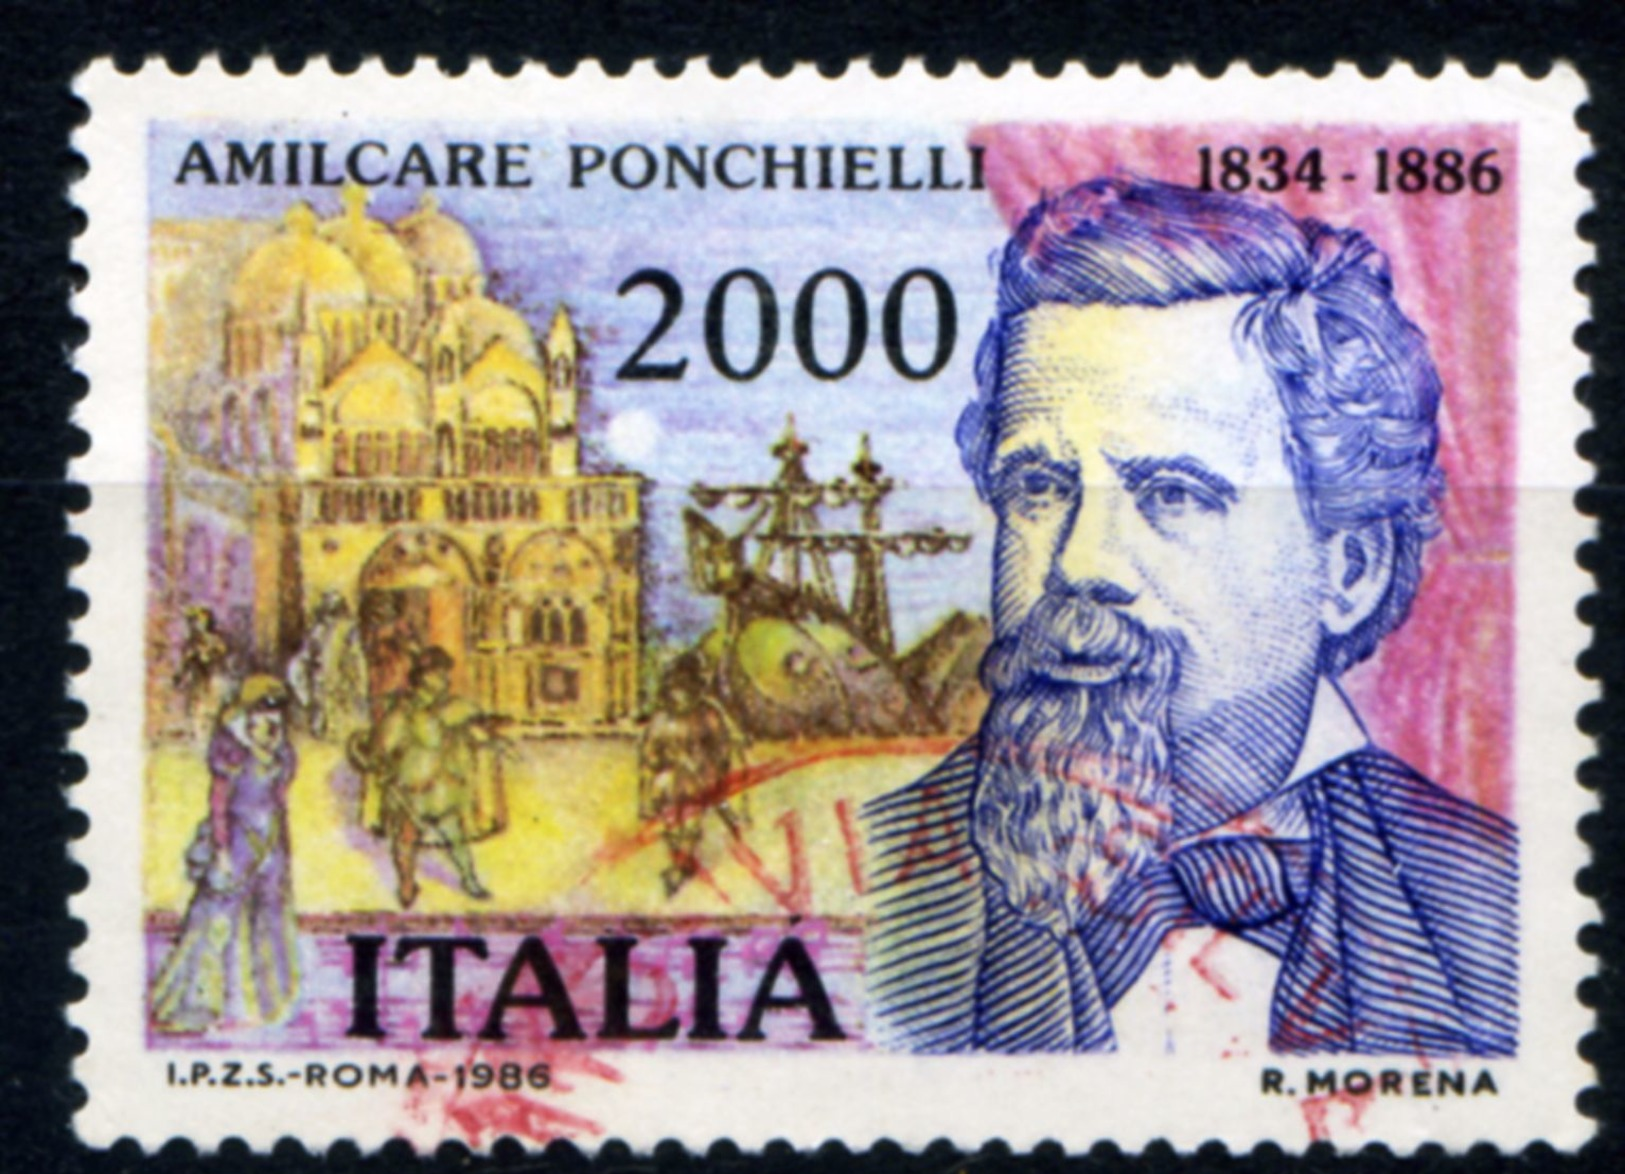 457> ITALIA 1986 < AMILCARE PONCHIELLI > Da Lire 2.000 = Valore Catalogo € 1,50 - 1981-90: Usati